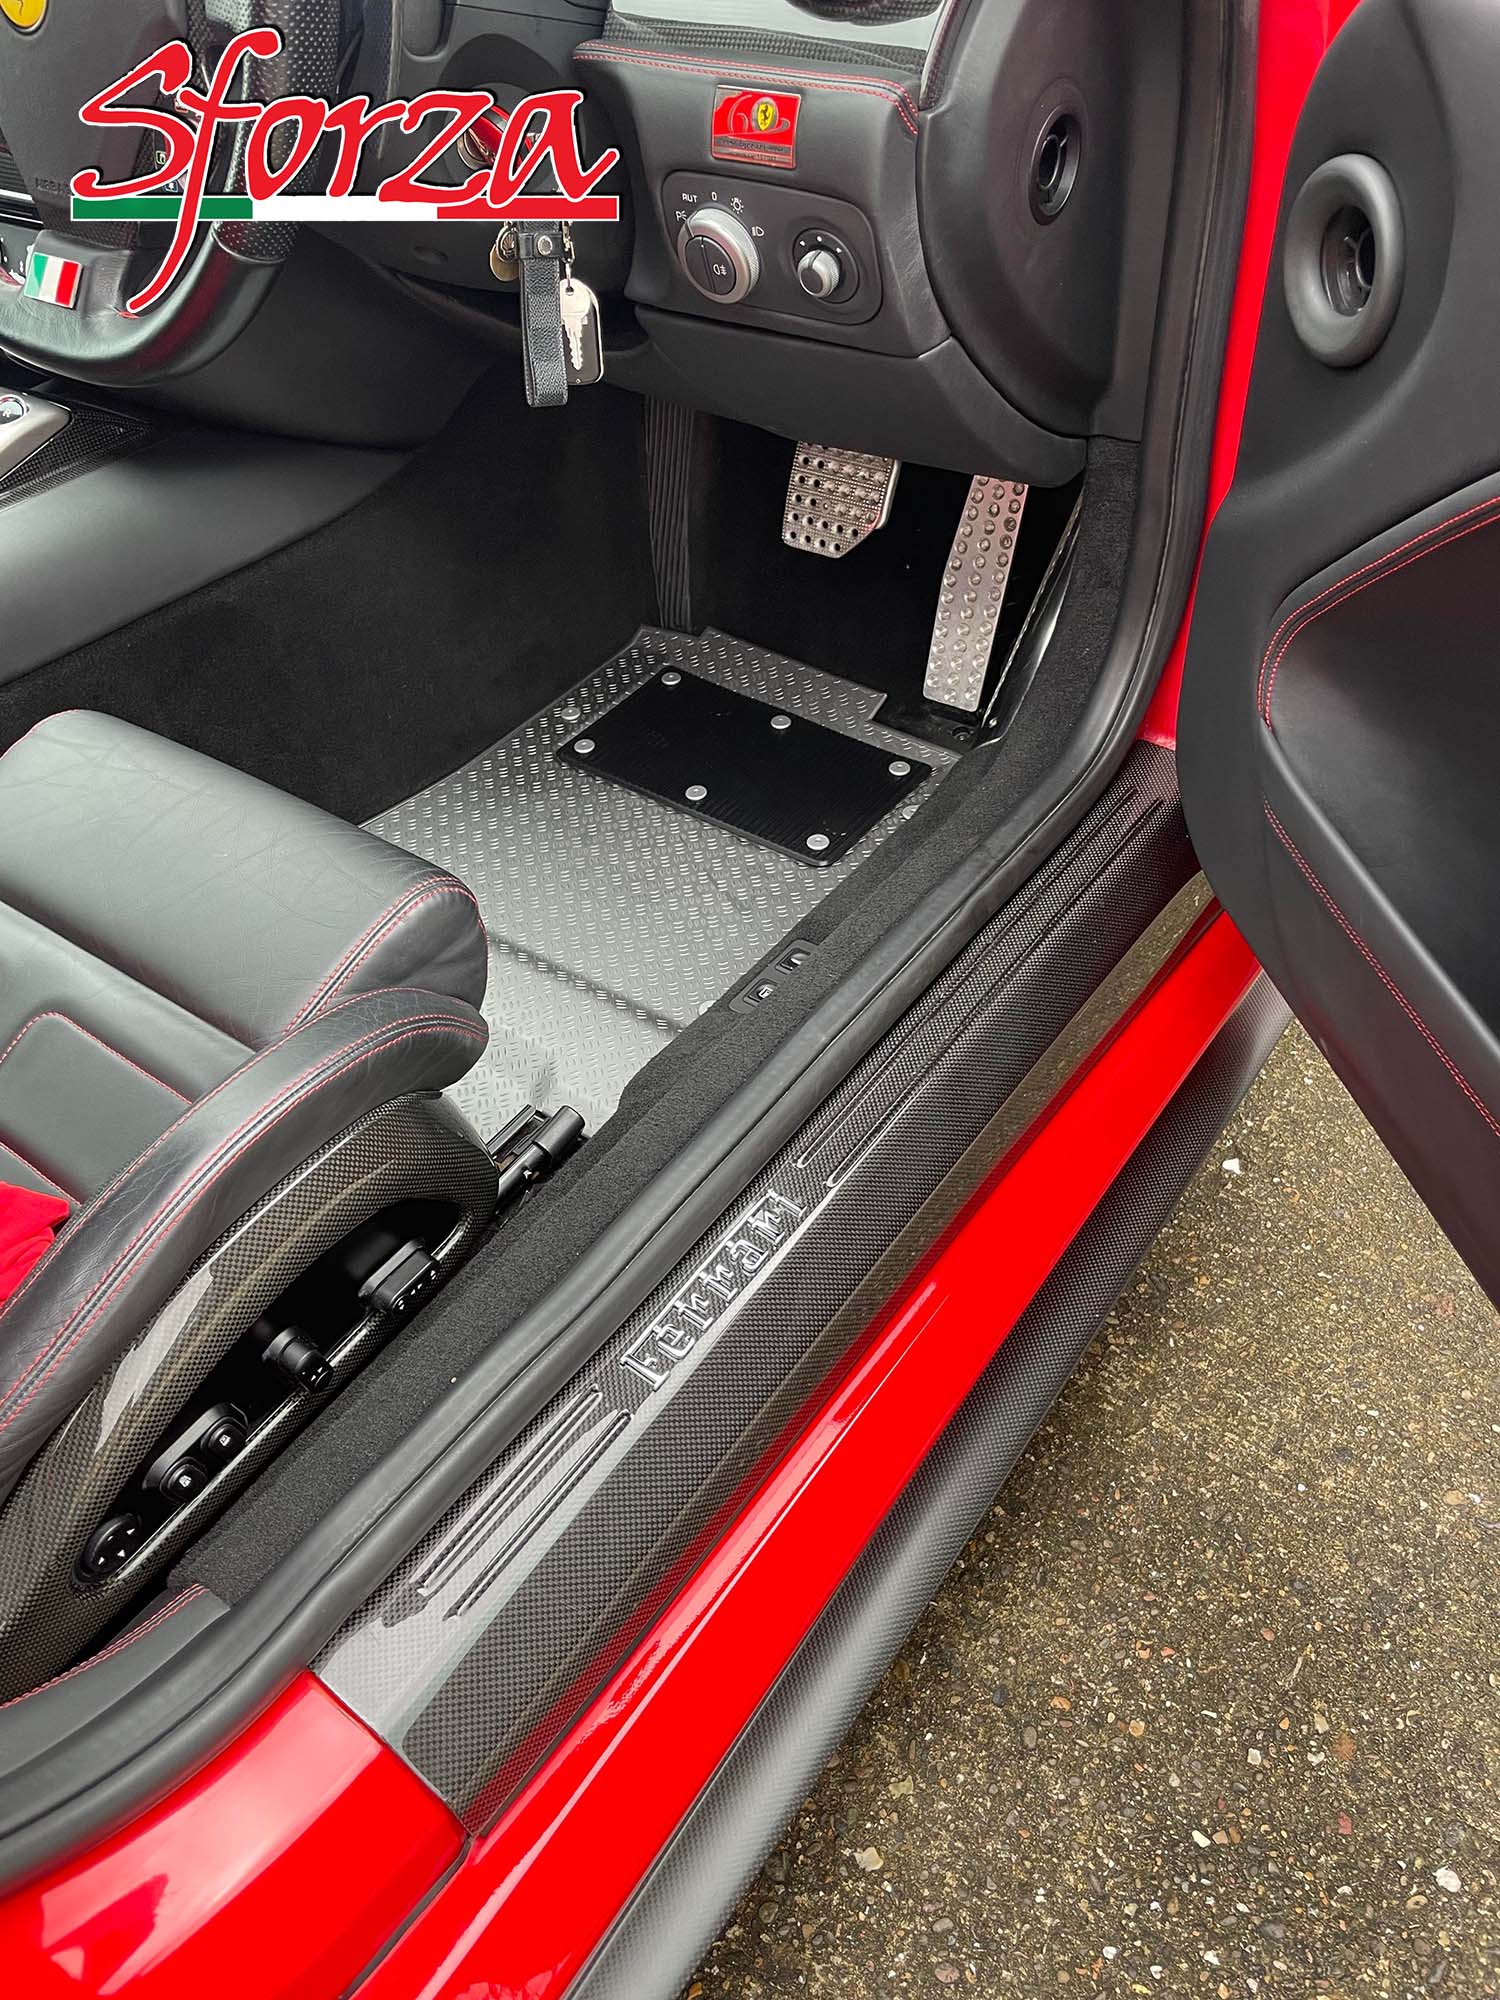 https://www.sforza.tech/wp-content/uploads/2021/01/Ferrari-599-gtb-carbon-kickplates-door-sills-installed.jpg